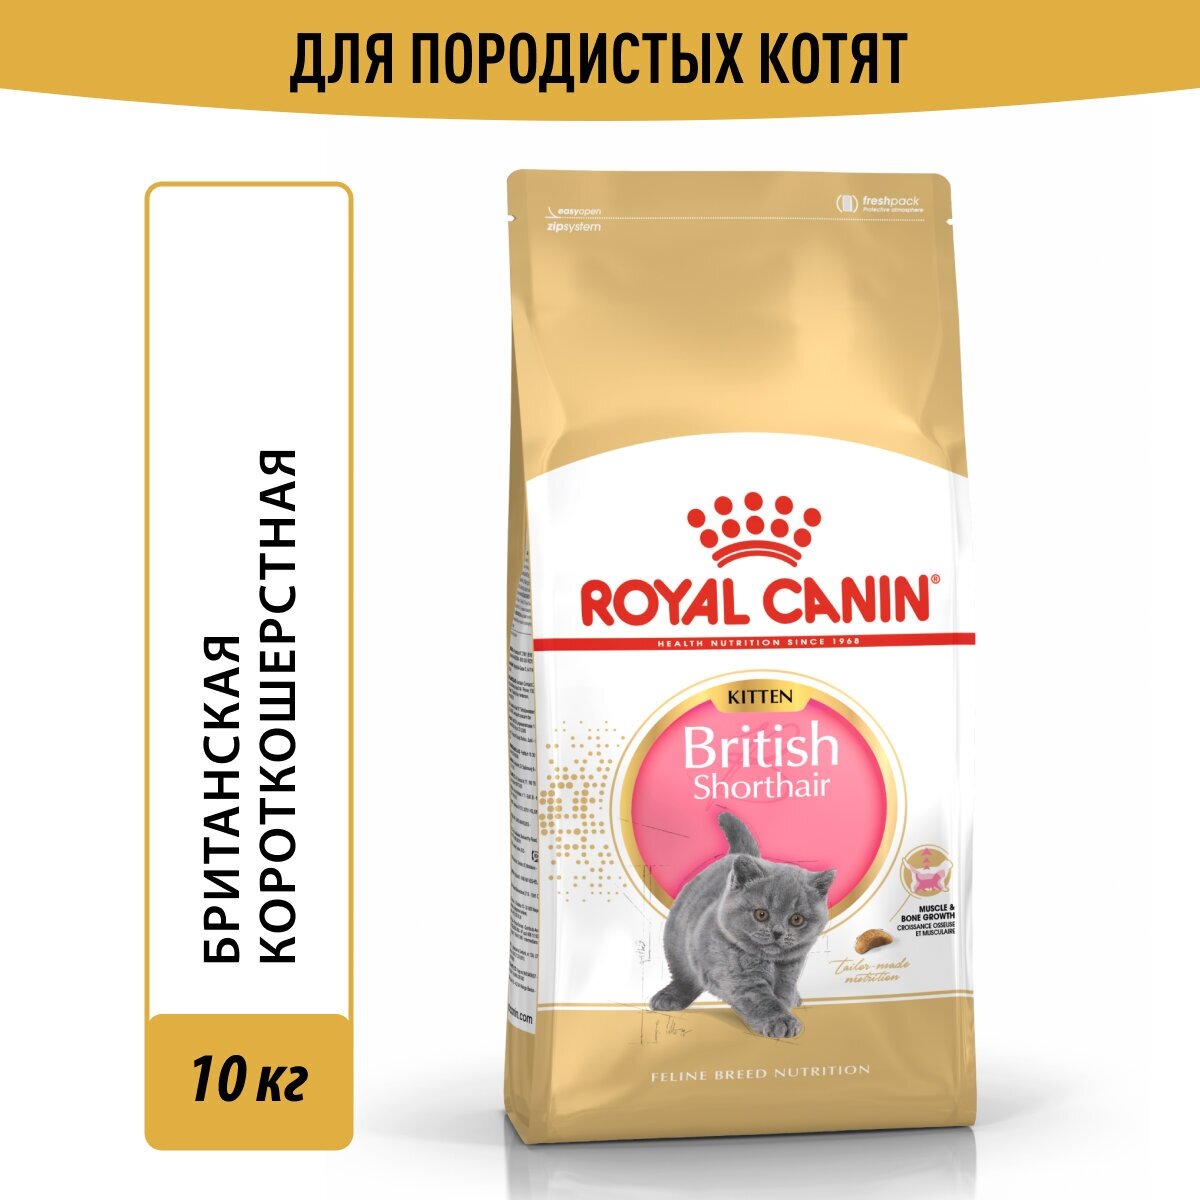 Корм Royal Canin British Shorthair Kitten (Британская Короткошерстная Киттен) сухой сбалансированный для британских короткошерстных котят, 10 кг